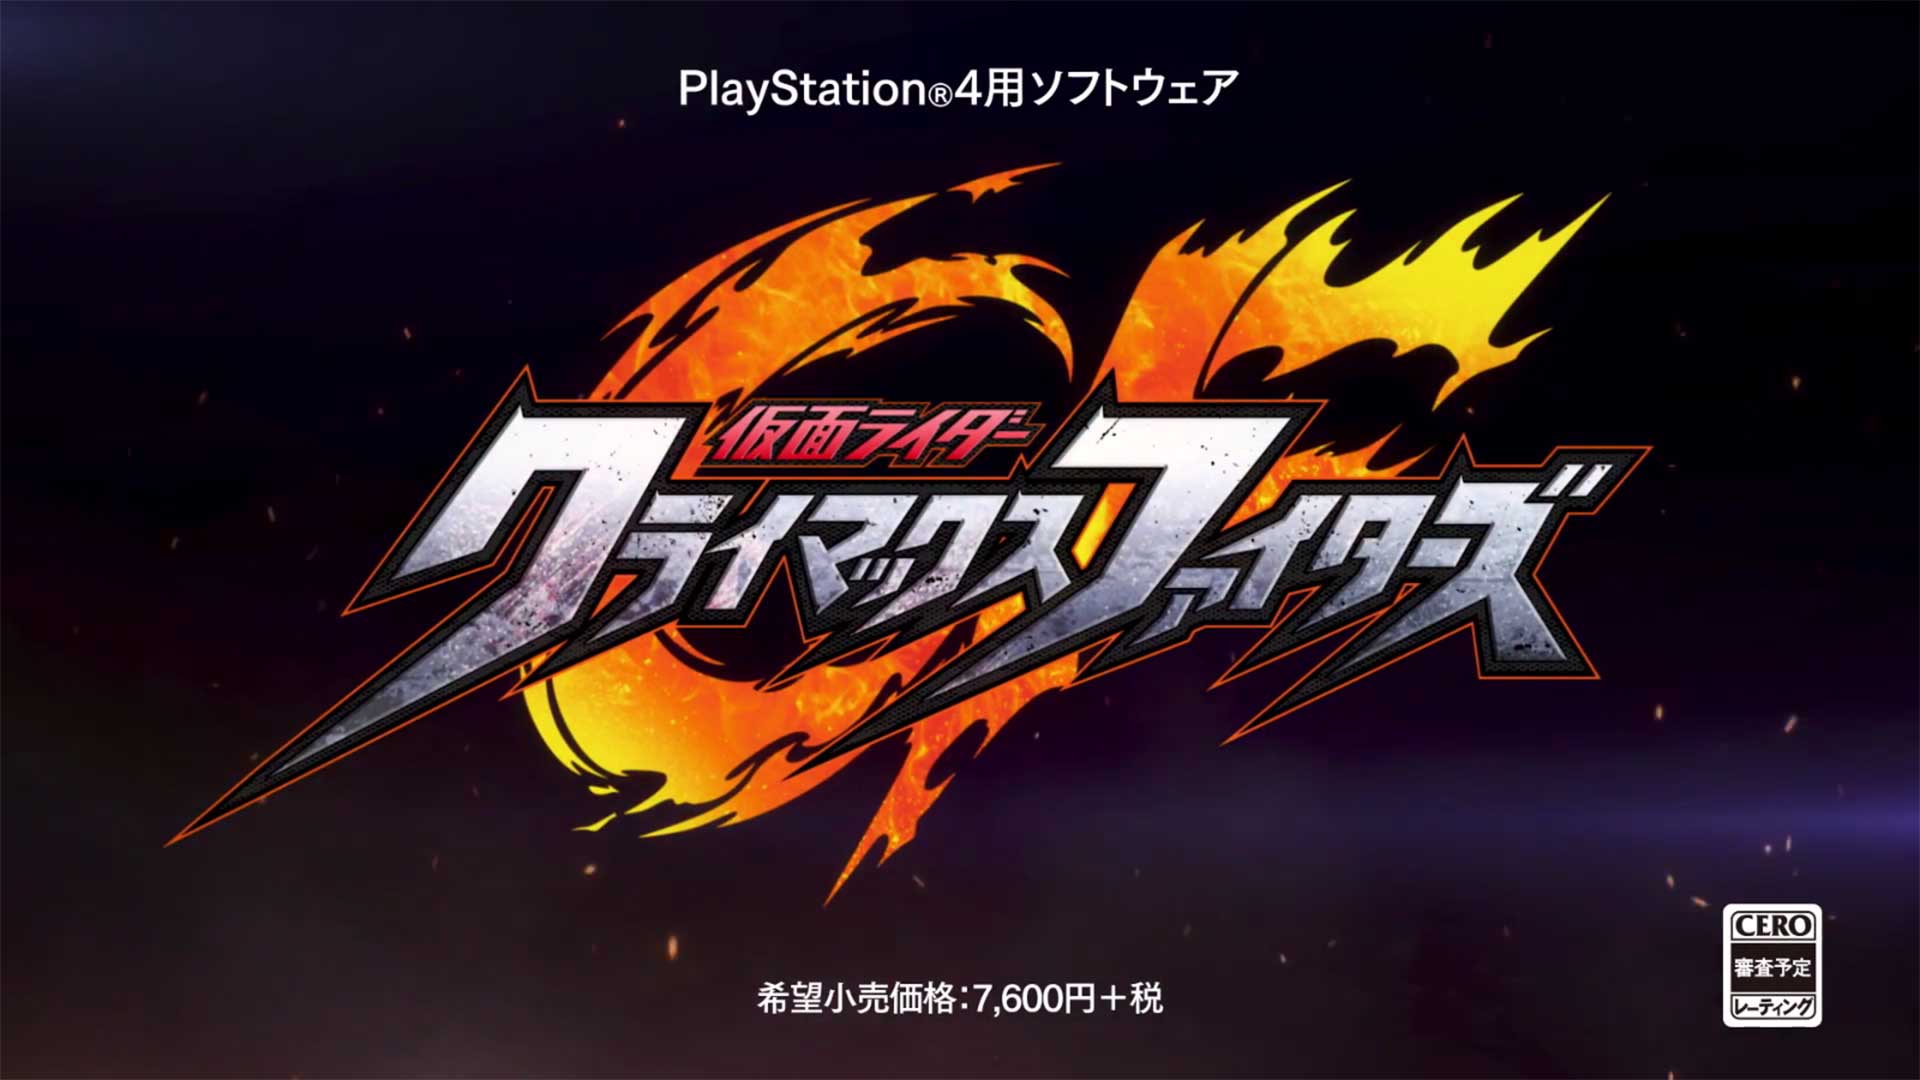 Annunciato Kamen Rider: Climax Fighters su PS4